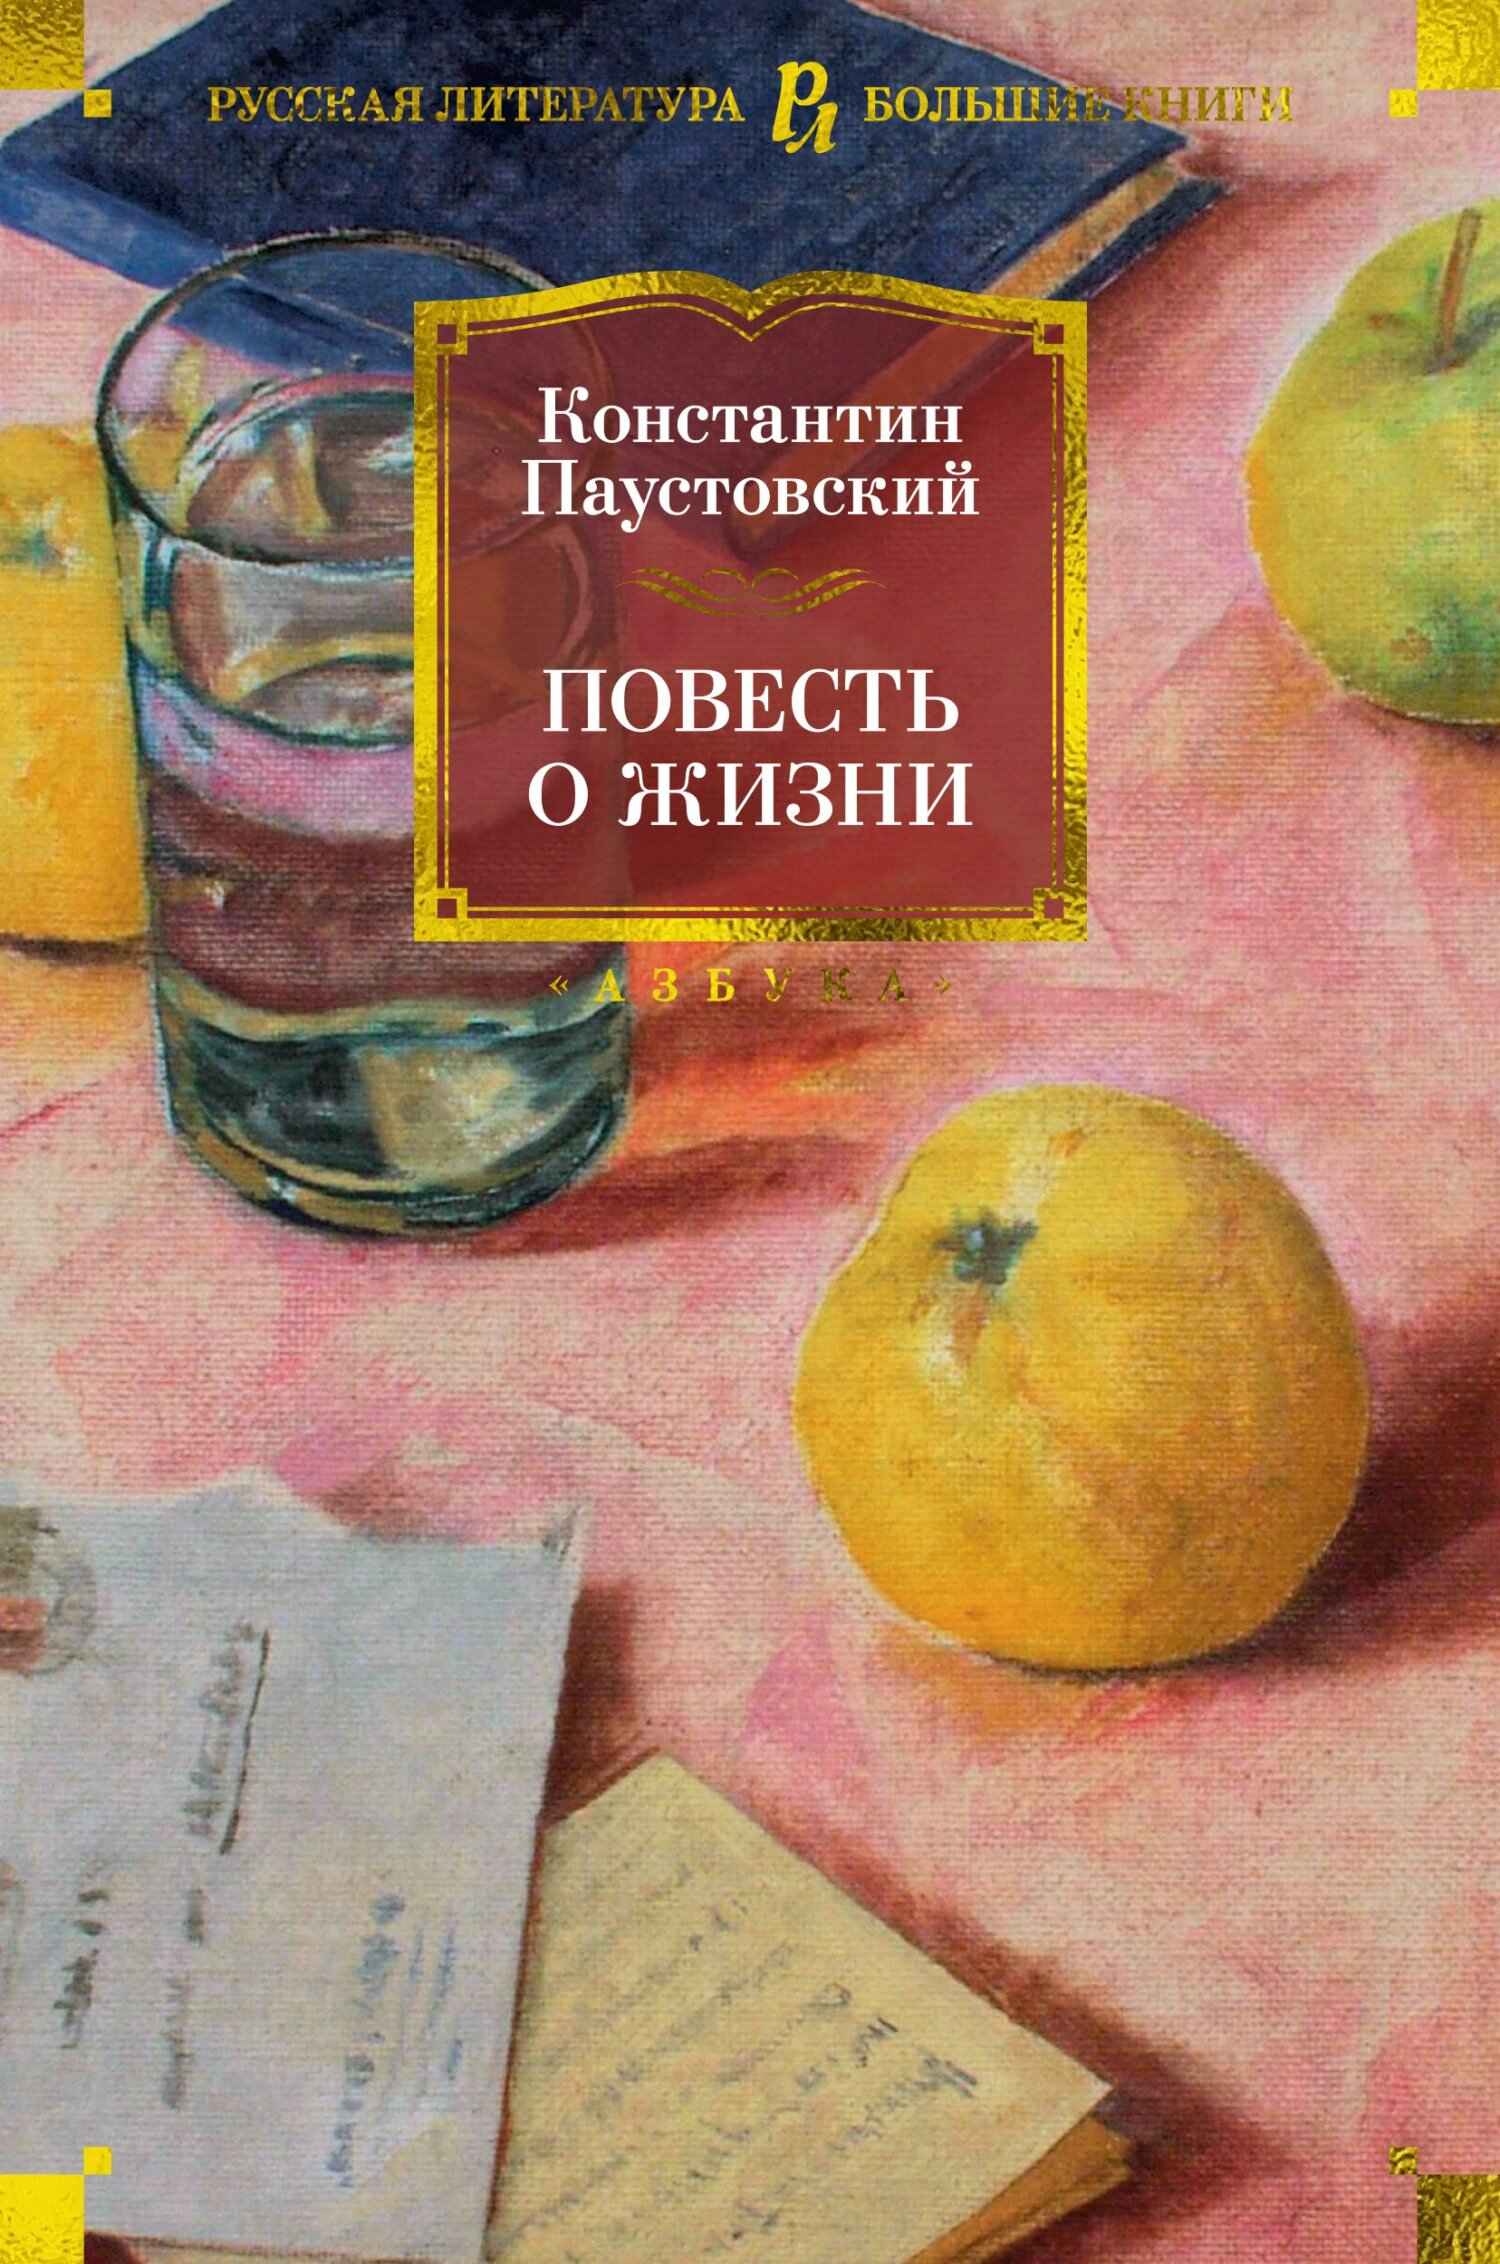 Повесть о жизни - Константин Георгиевич Паустовский